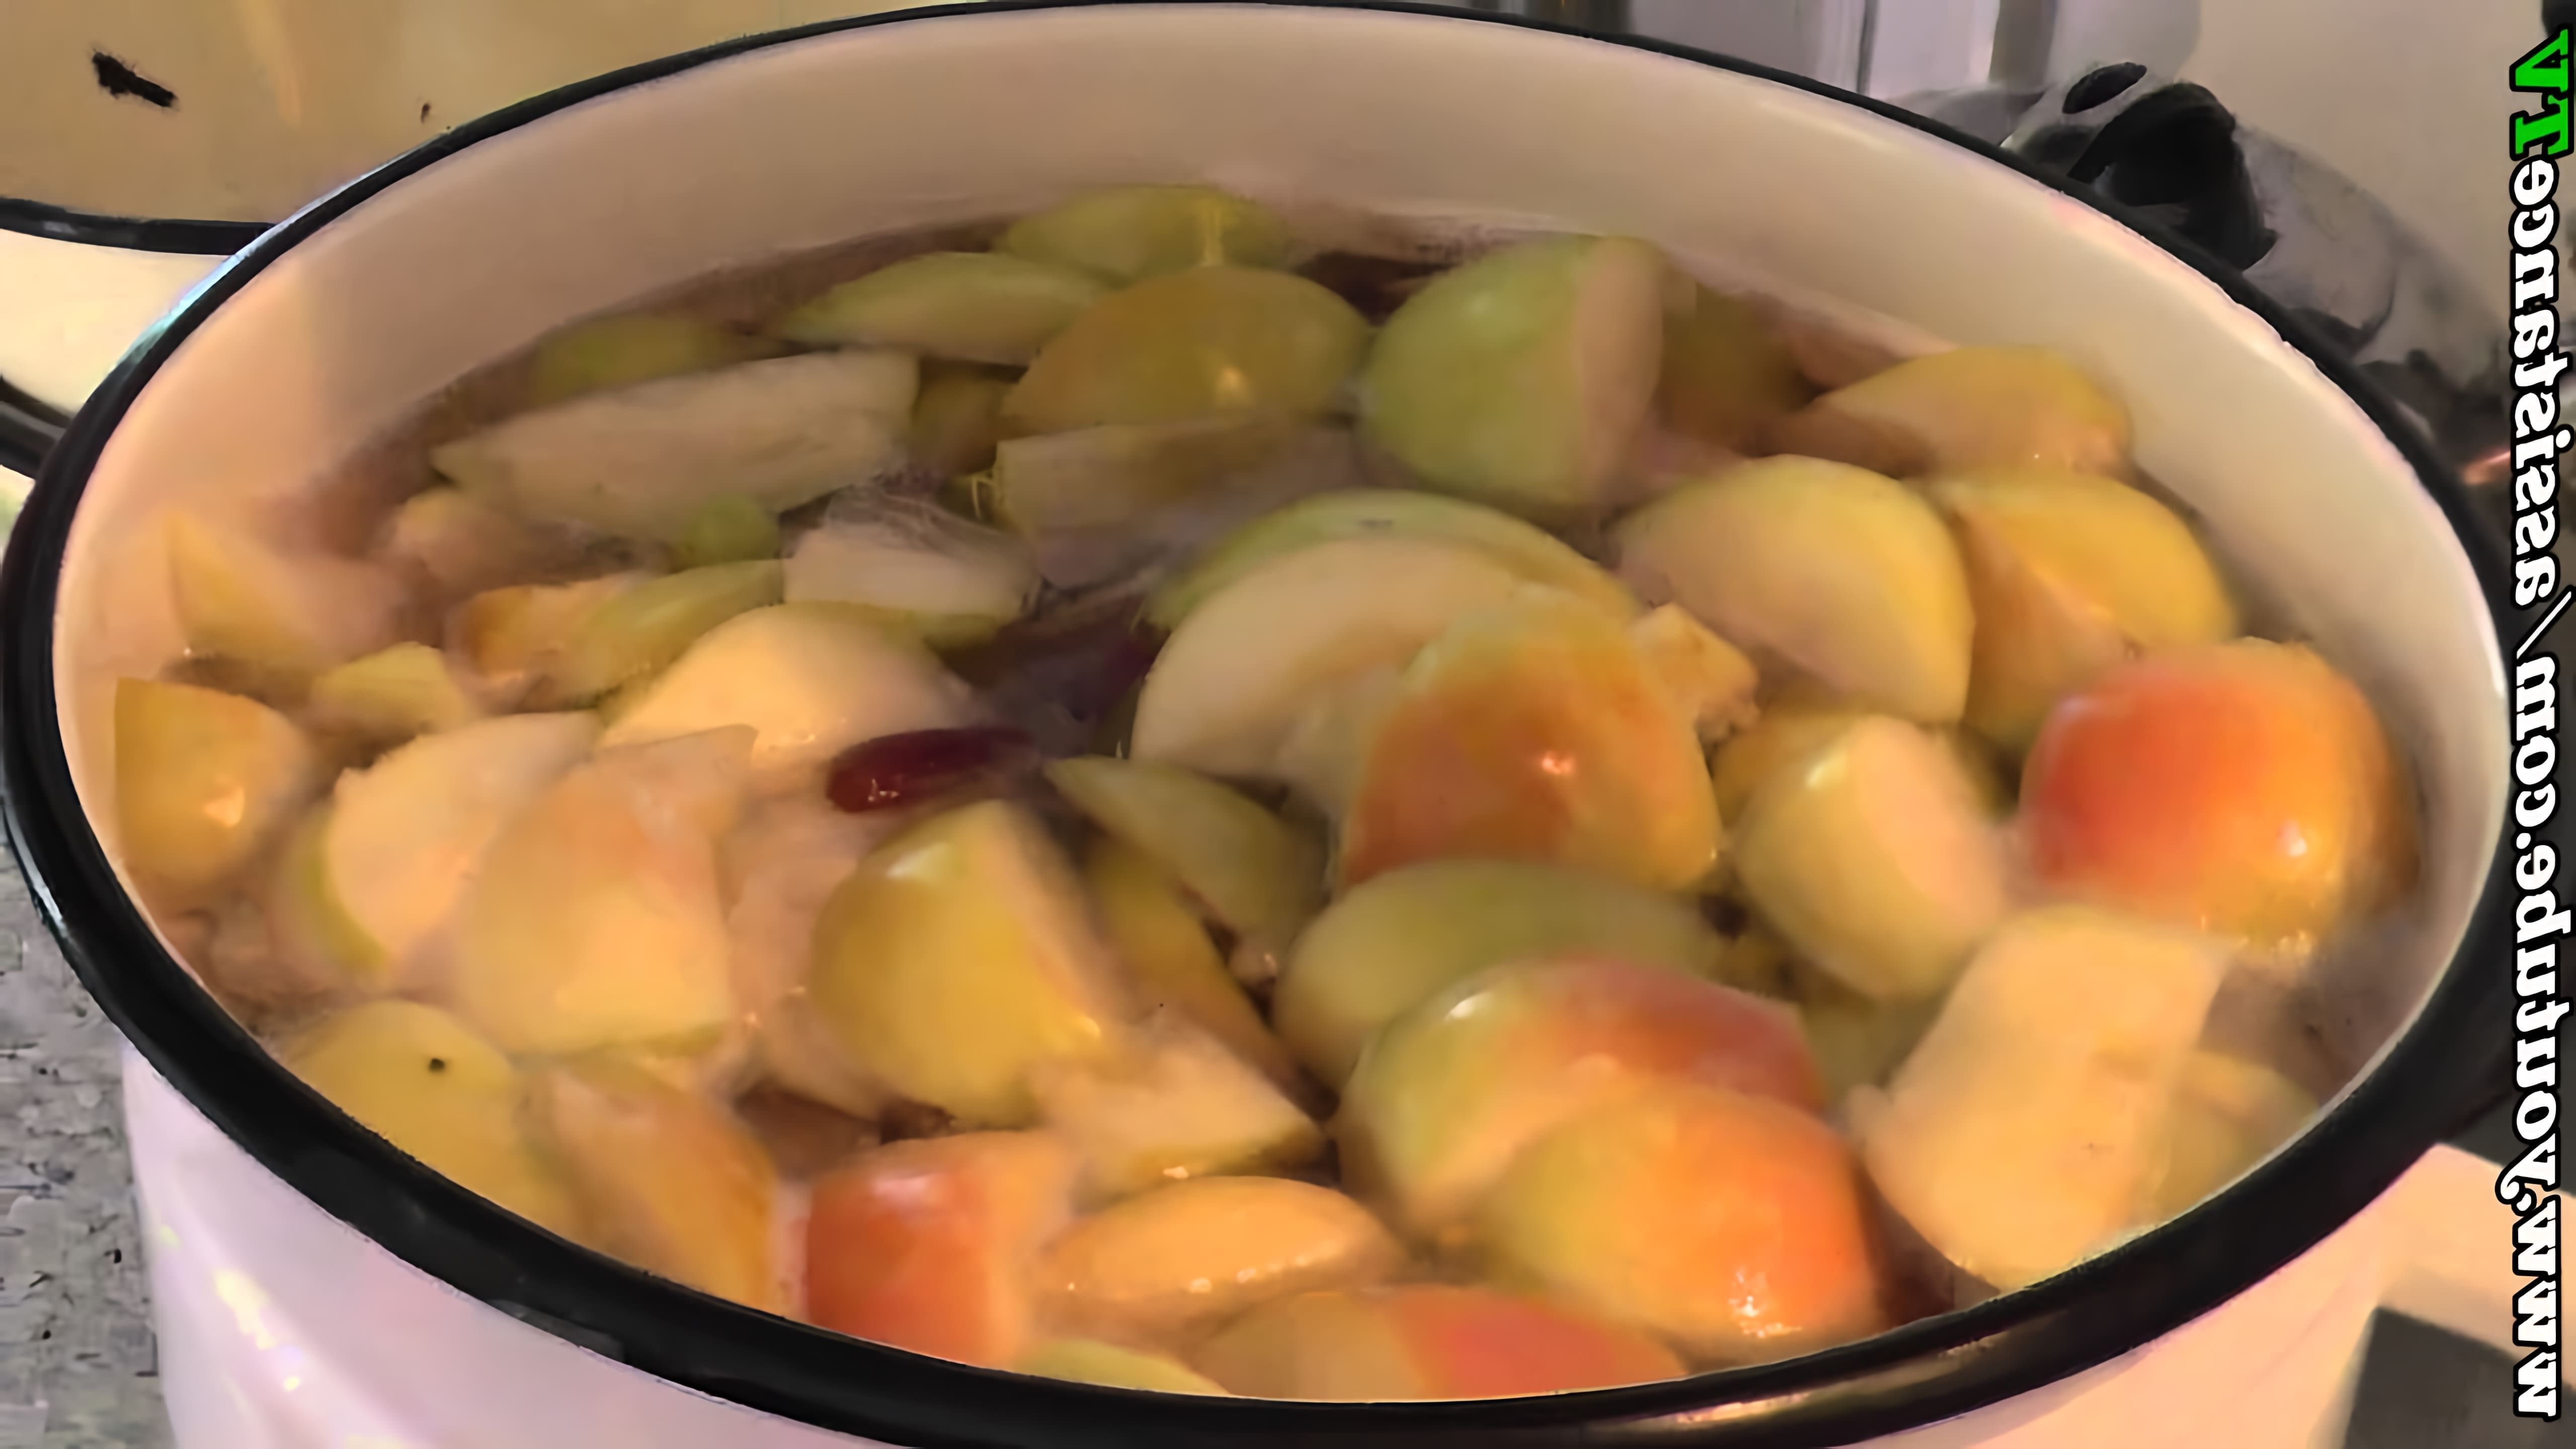 В этом видео показано, как приготовить вкусный и полезный компот из яблок, ягод (земляника, малина, смородина) и сливы